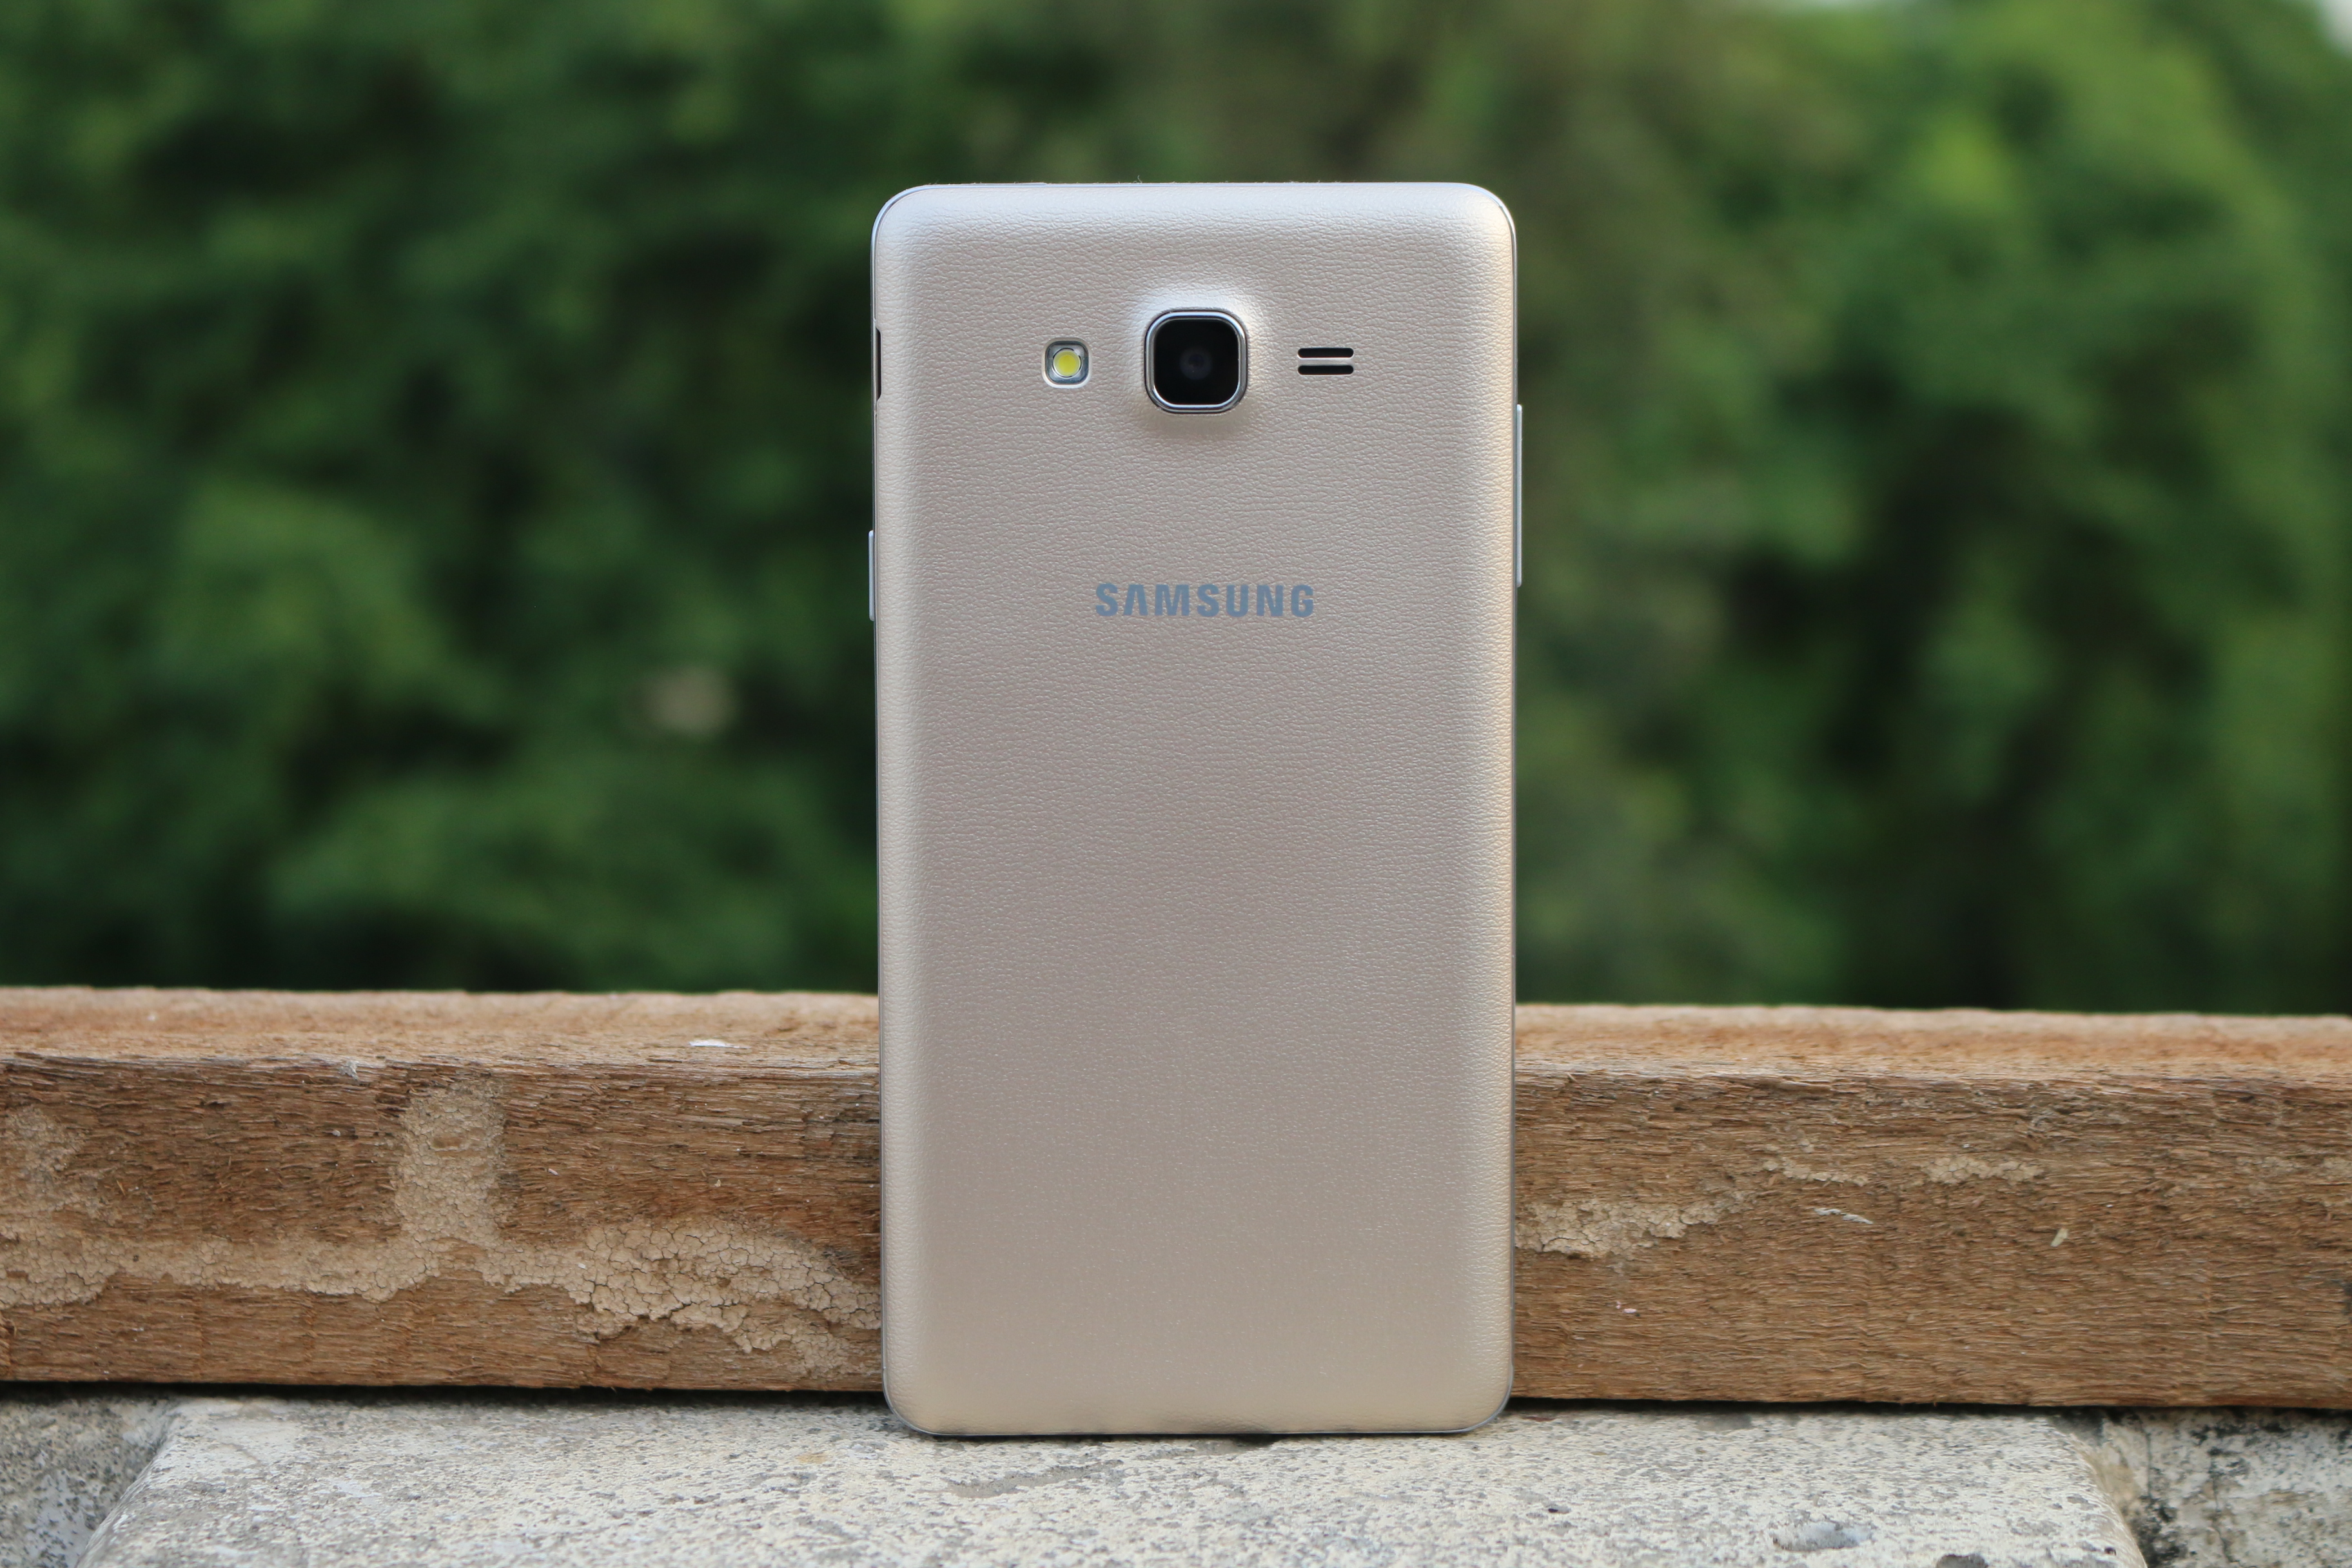 Soalan Lazim, Kelebihan & Kekurangan Samsung Galaxy On7 Pro, Pertanyaan dan Jawapan Pengguna